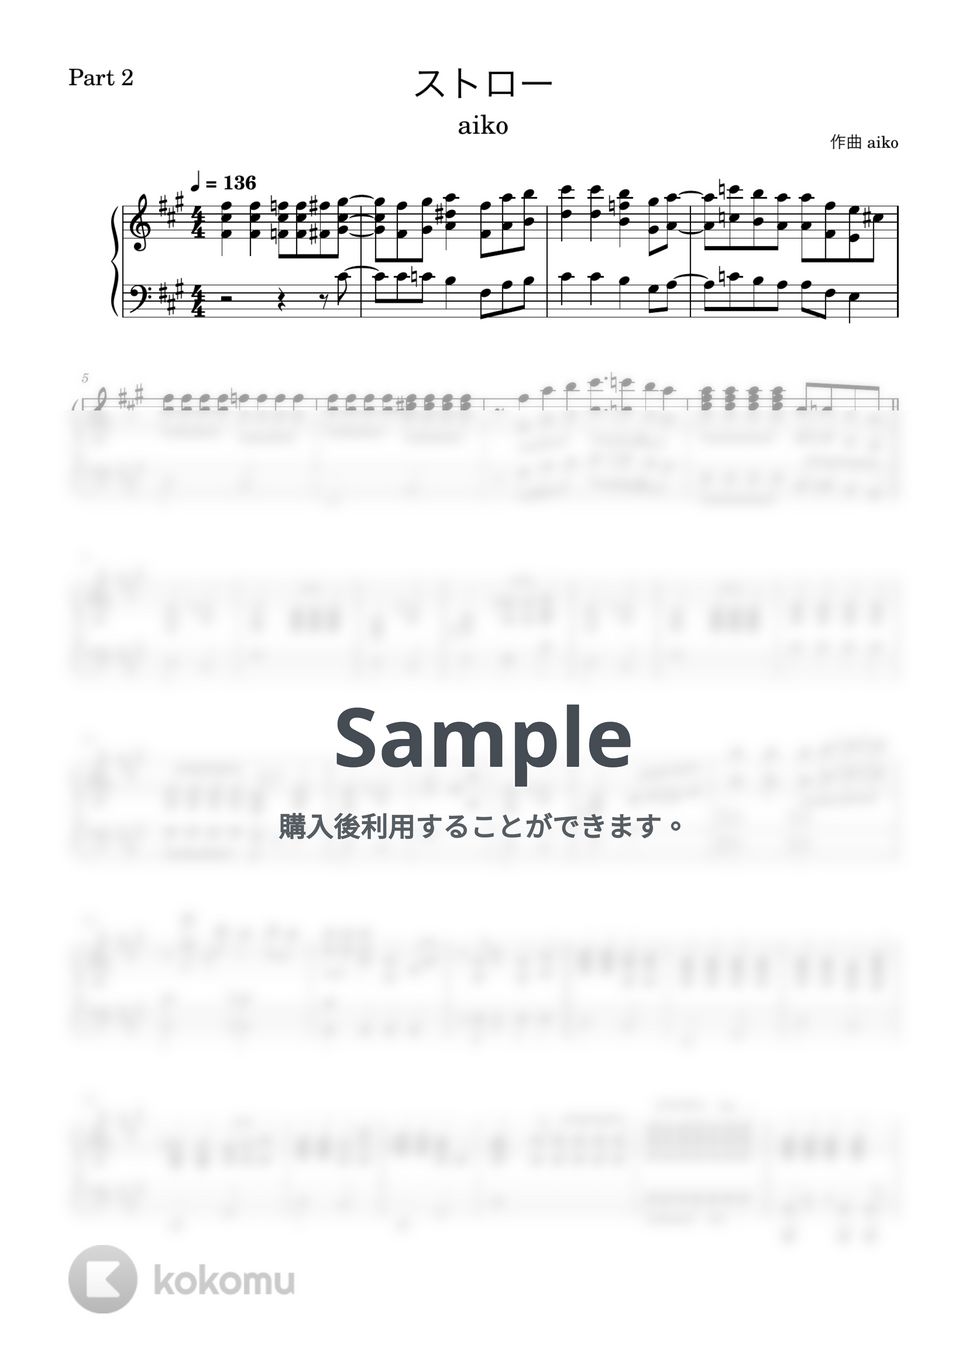 aiko - ストロー【ピアノパート】 (ピアノパート/コピーバンド) by とりちゃん